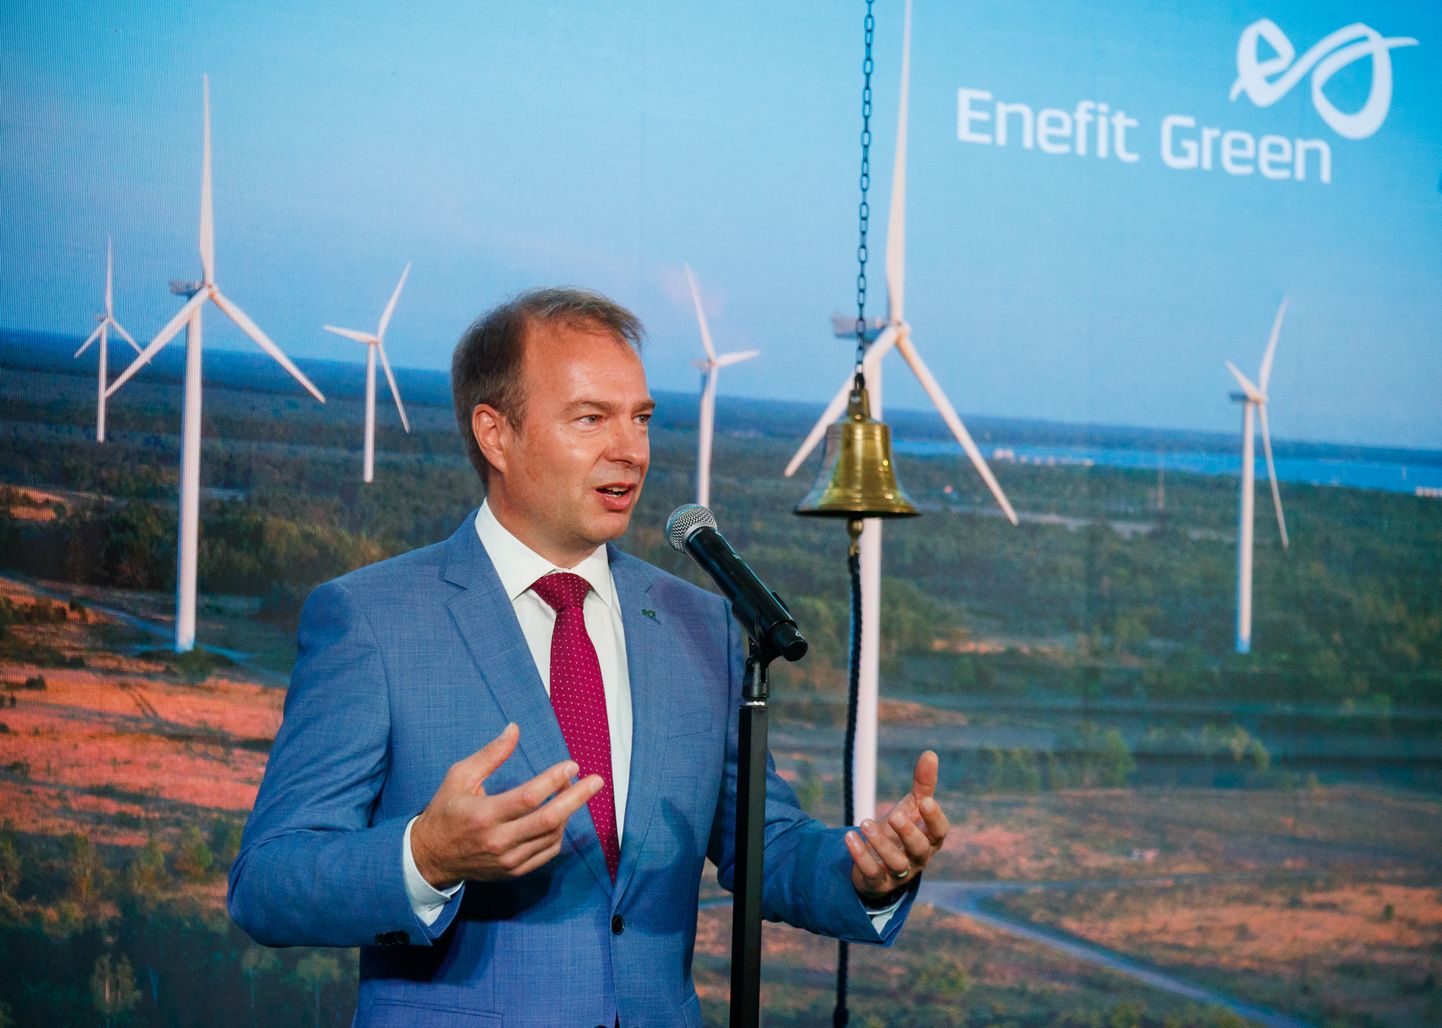 21.10.2021, Tallinn
Enefit Green aktsia esimese kauplemispäeva tähistamine Energia Avastuskeskuses. Hando Sutter.
Foto Mihkel Maripuu, Postimees